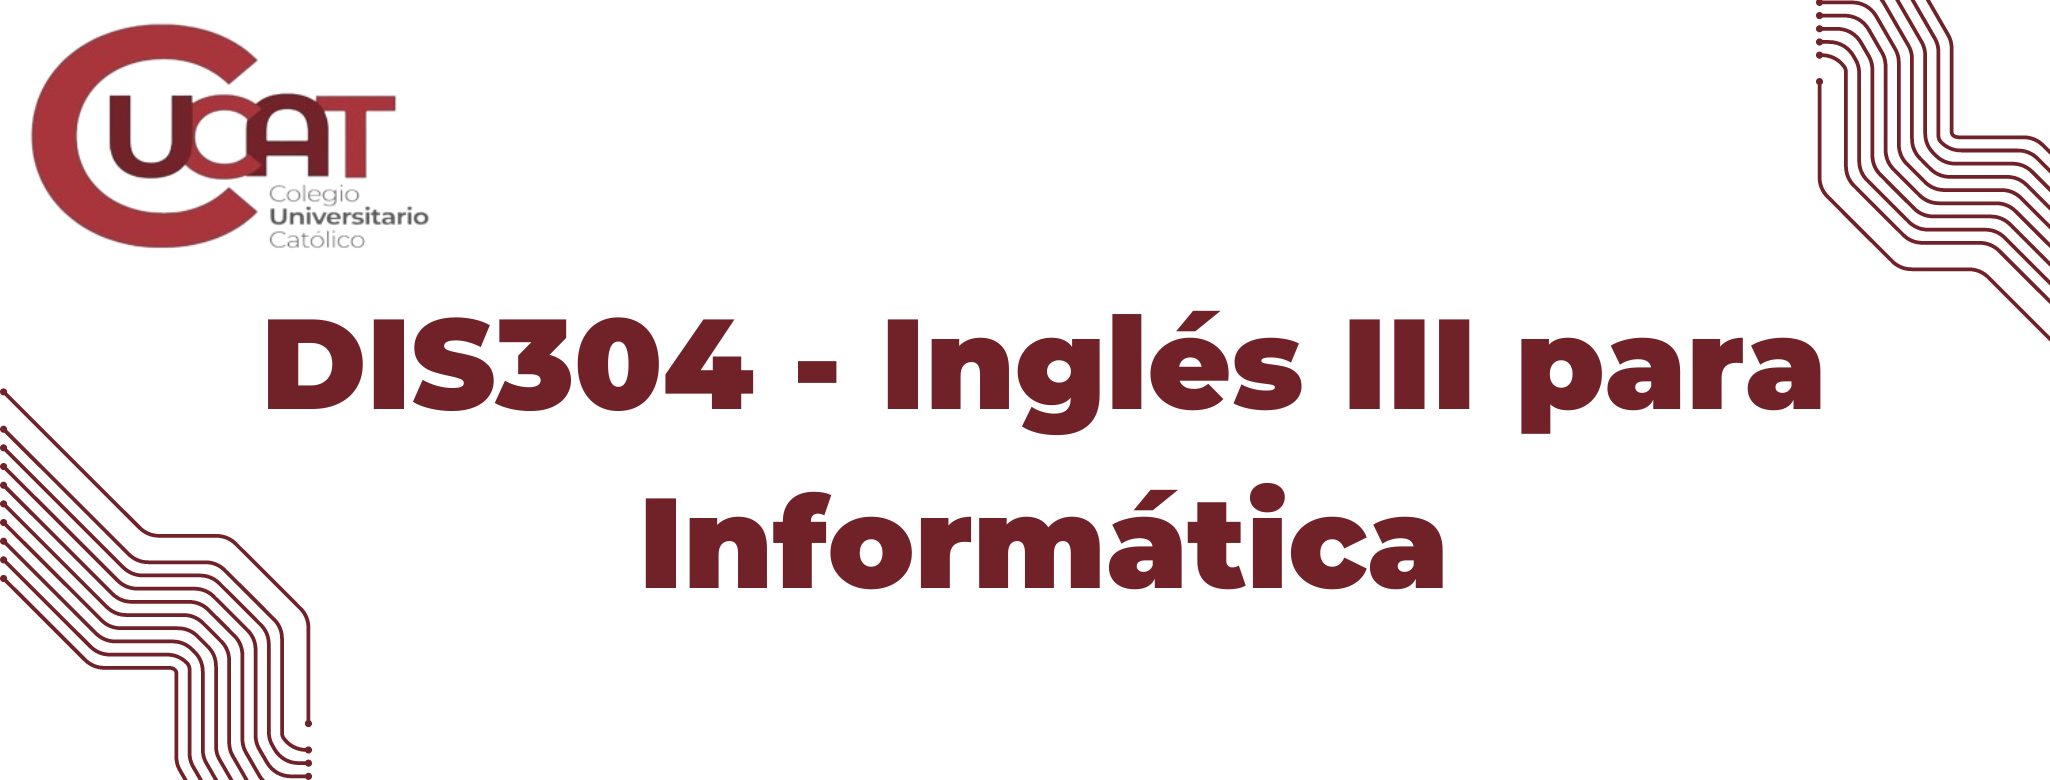 DIS304-Inglés III para Informática